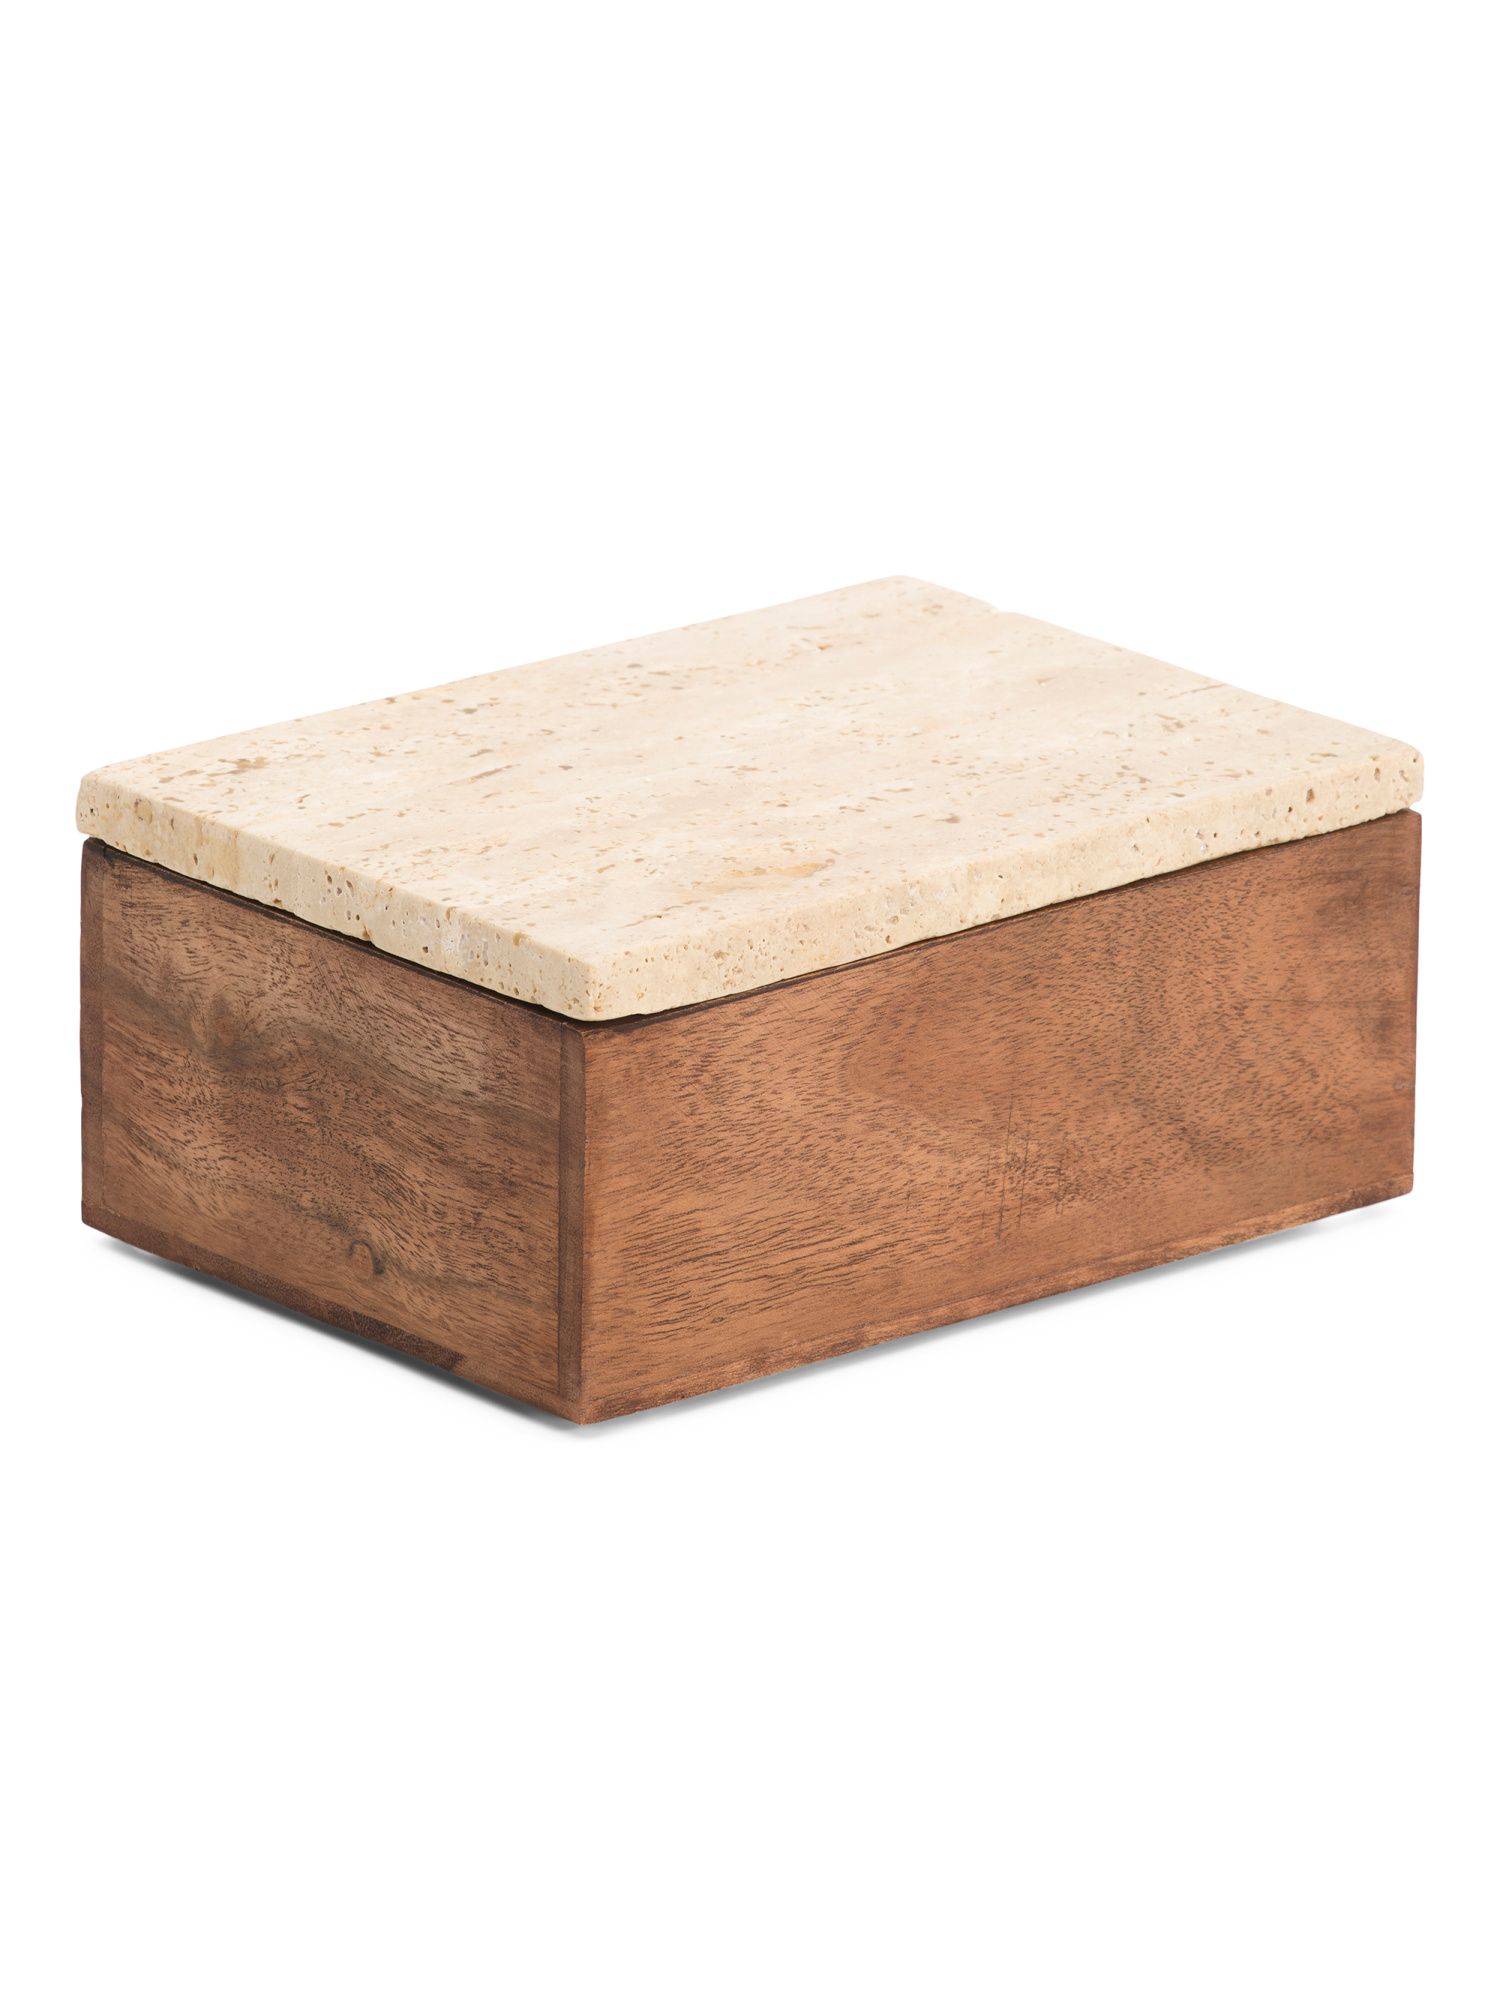 7in Wood And Travertine Box | Marshalls